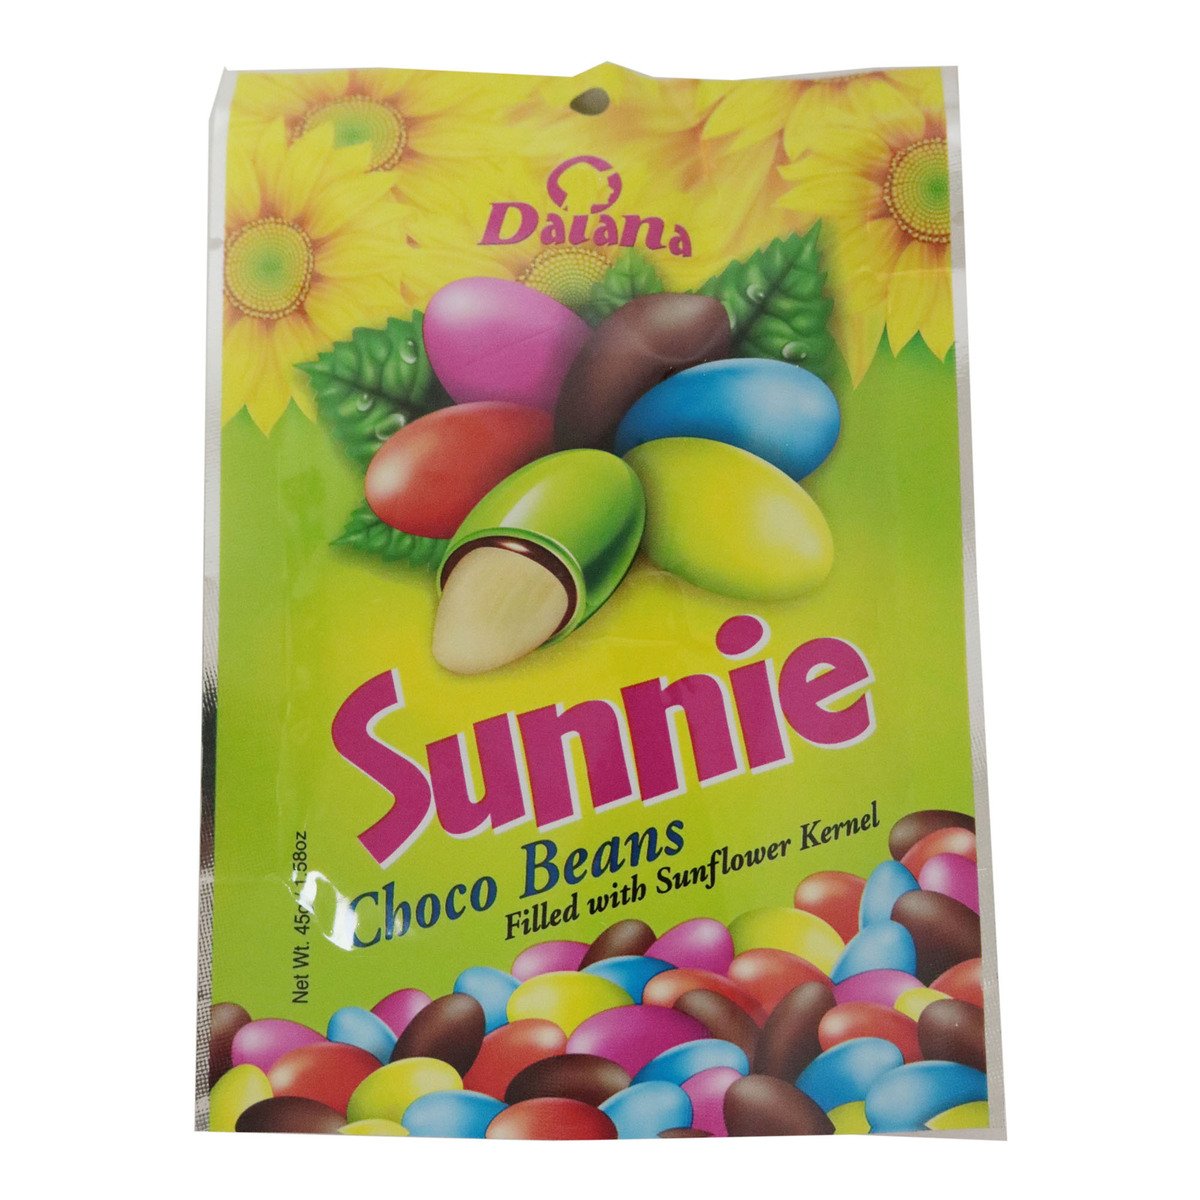 Daiana Sunnie Choco Beans 45g